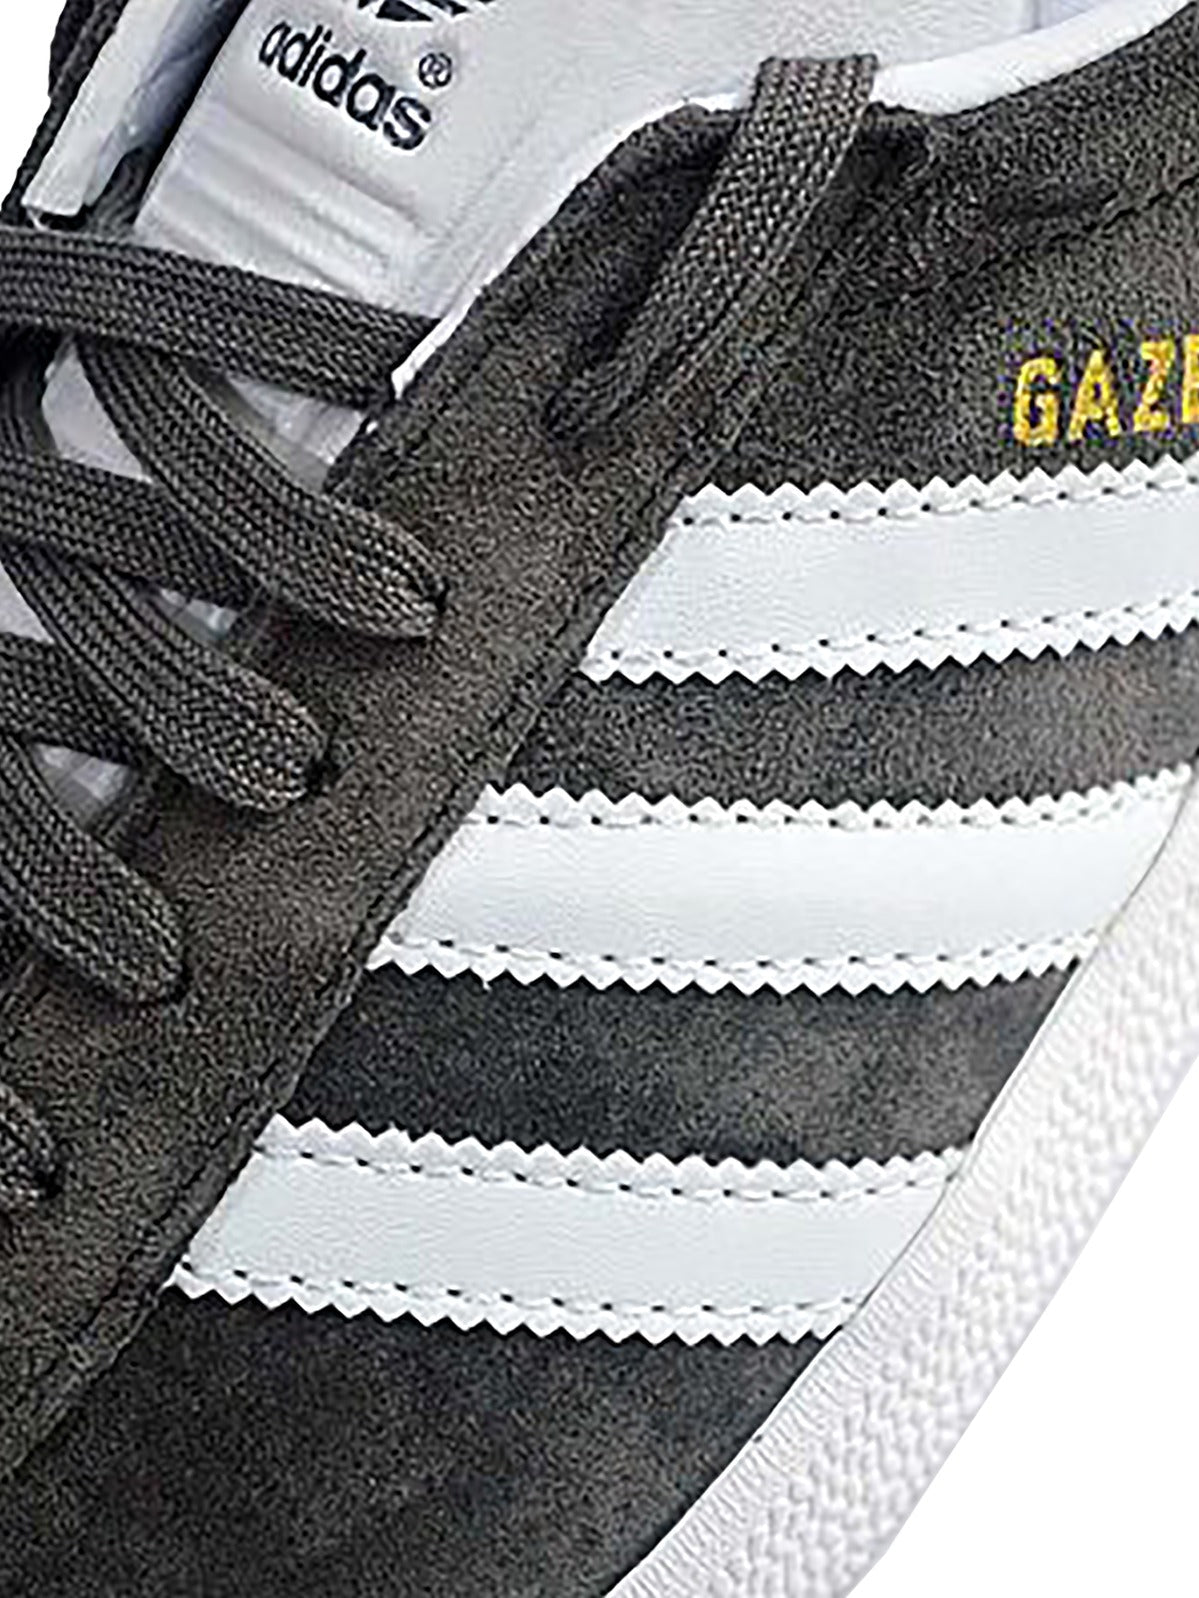 ADIDAS GAZELLE Copy of Adidas | Mens Gazelle Trainers ADIDAS RAWDENIM